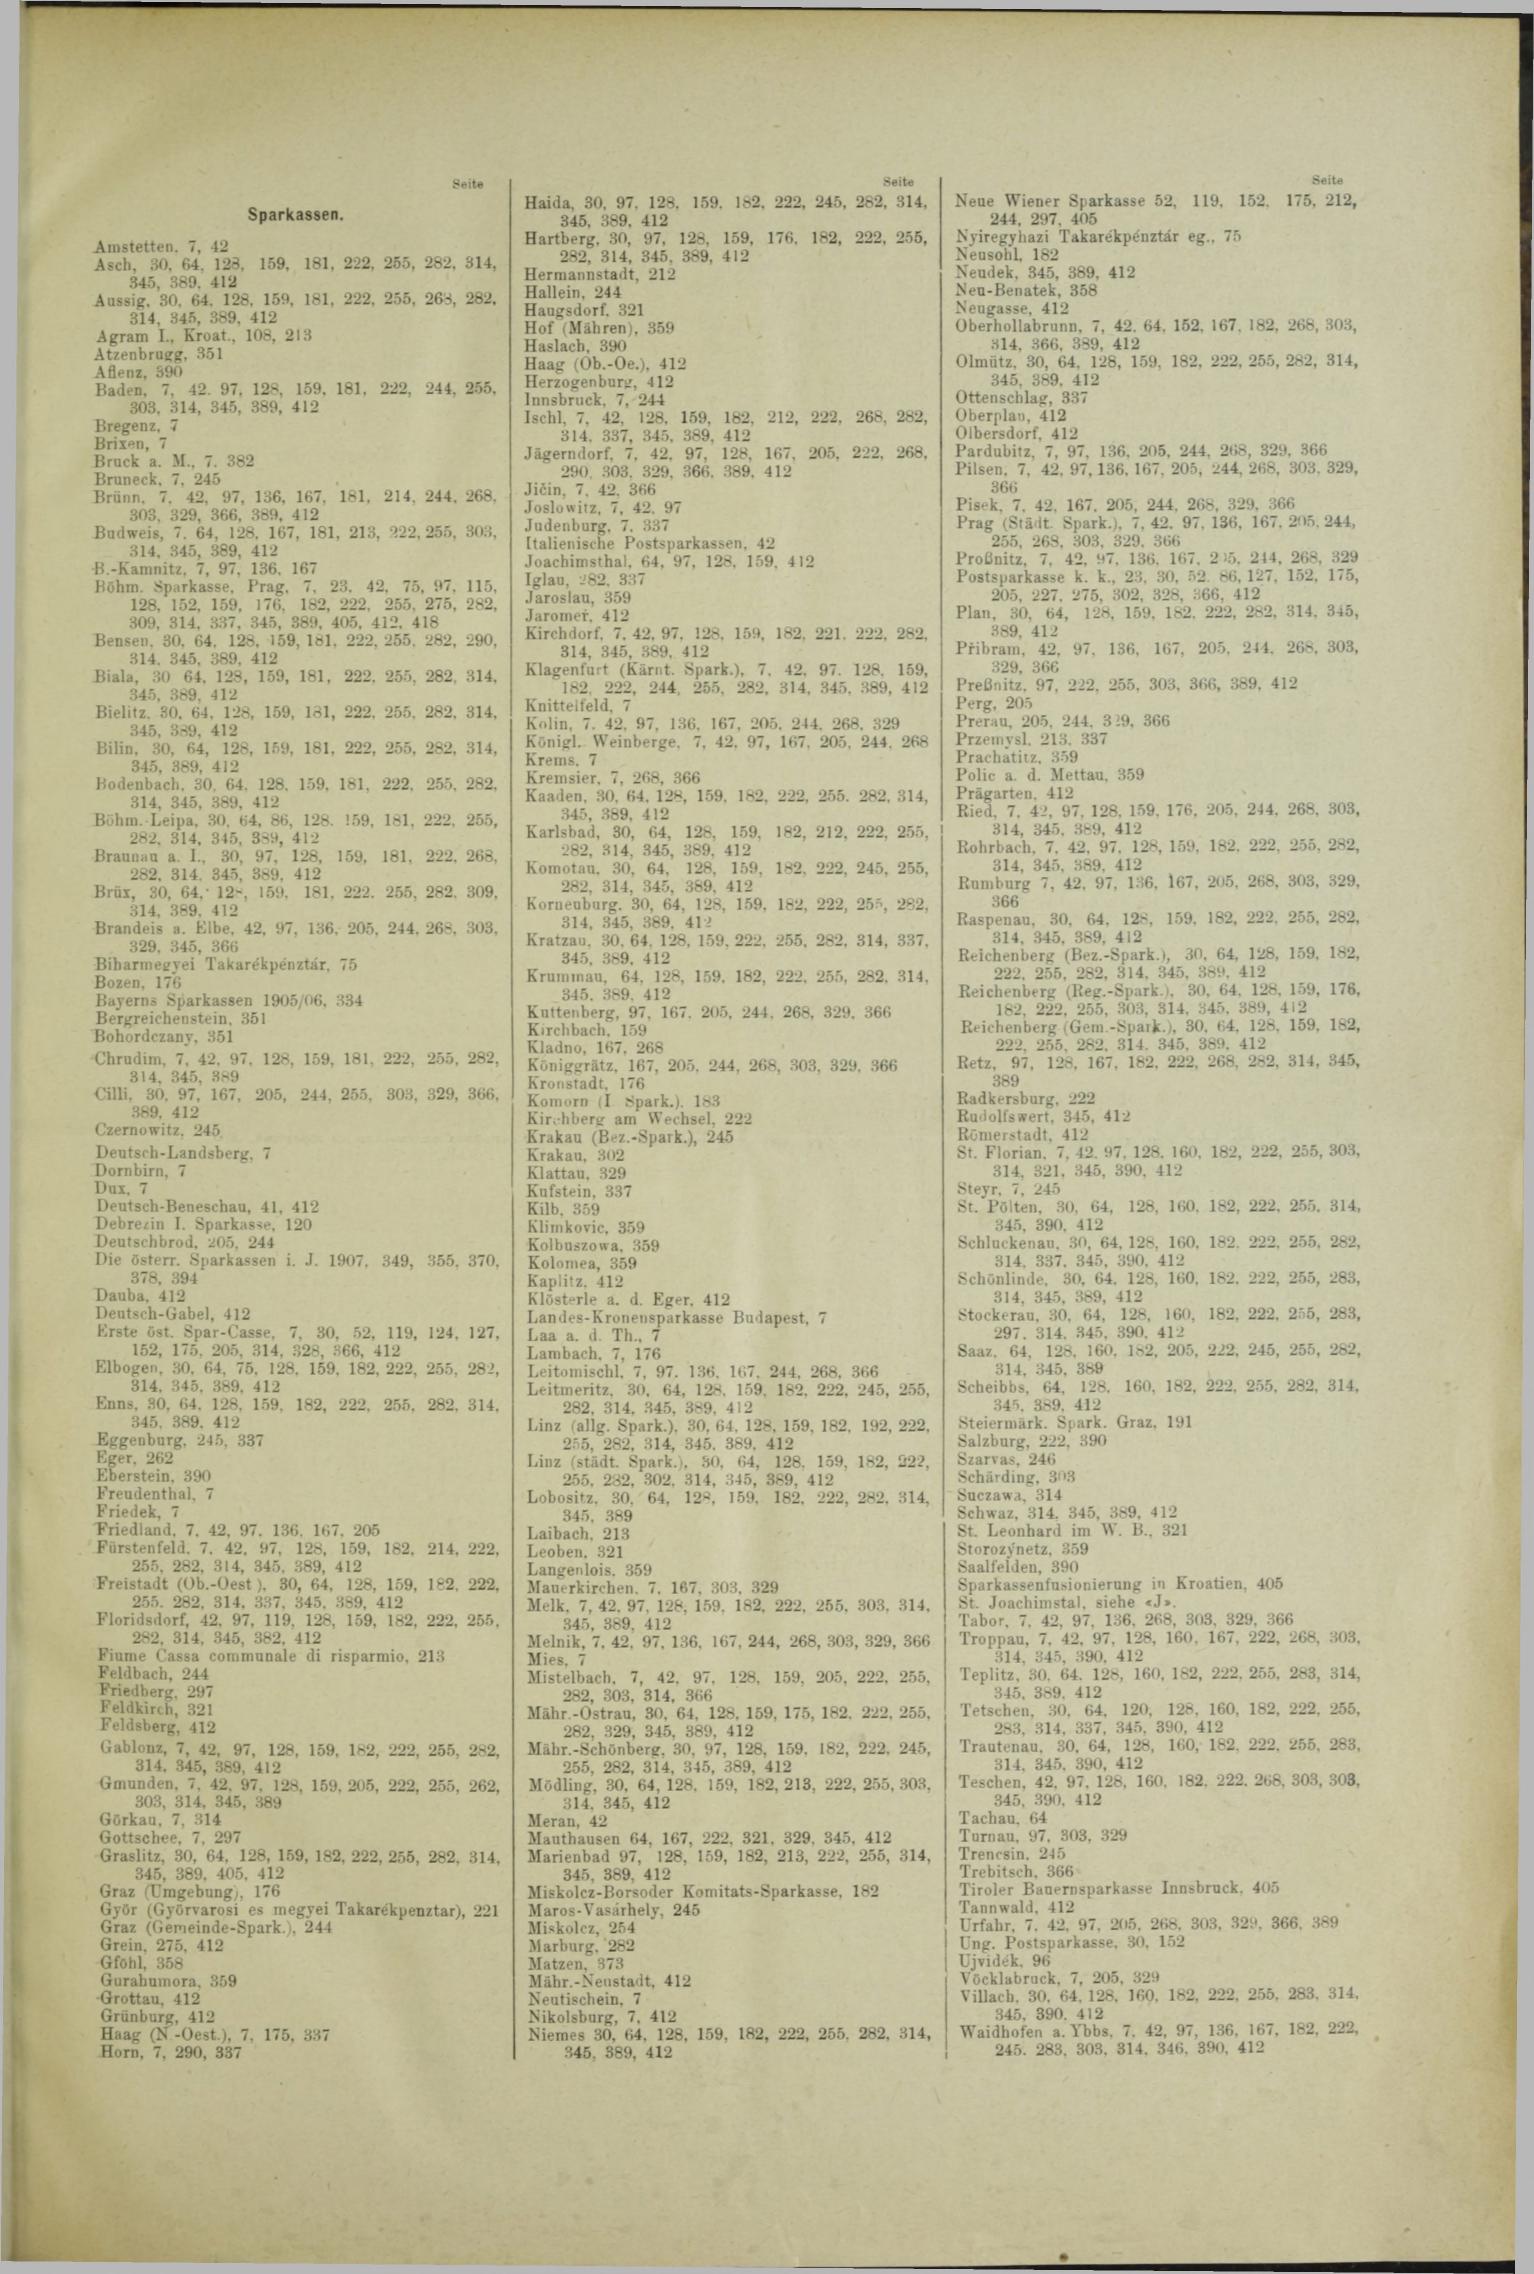 Der Tresor 19.09.1908 - Seite 9